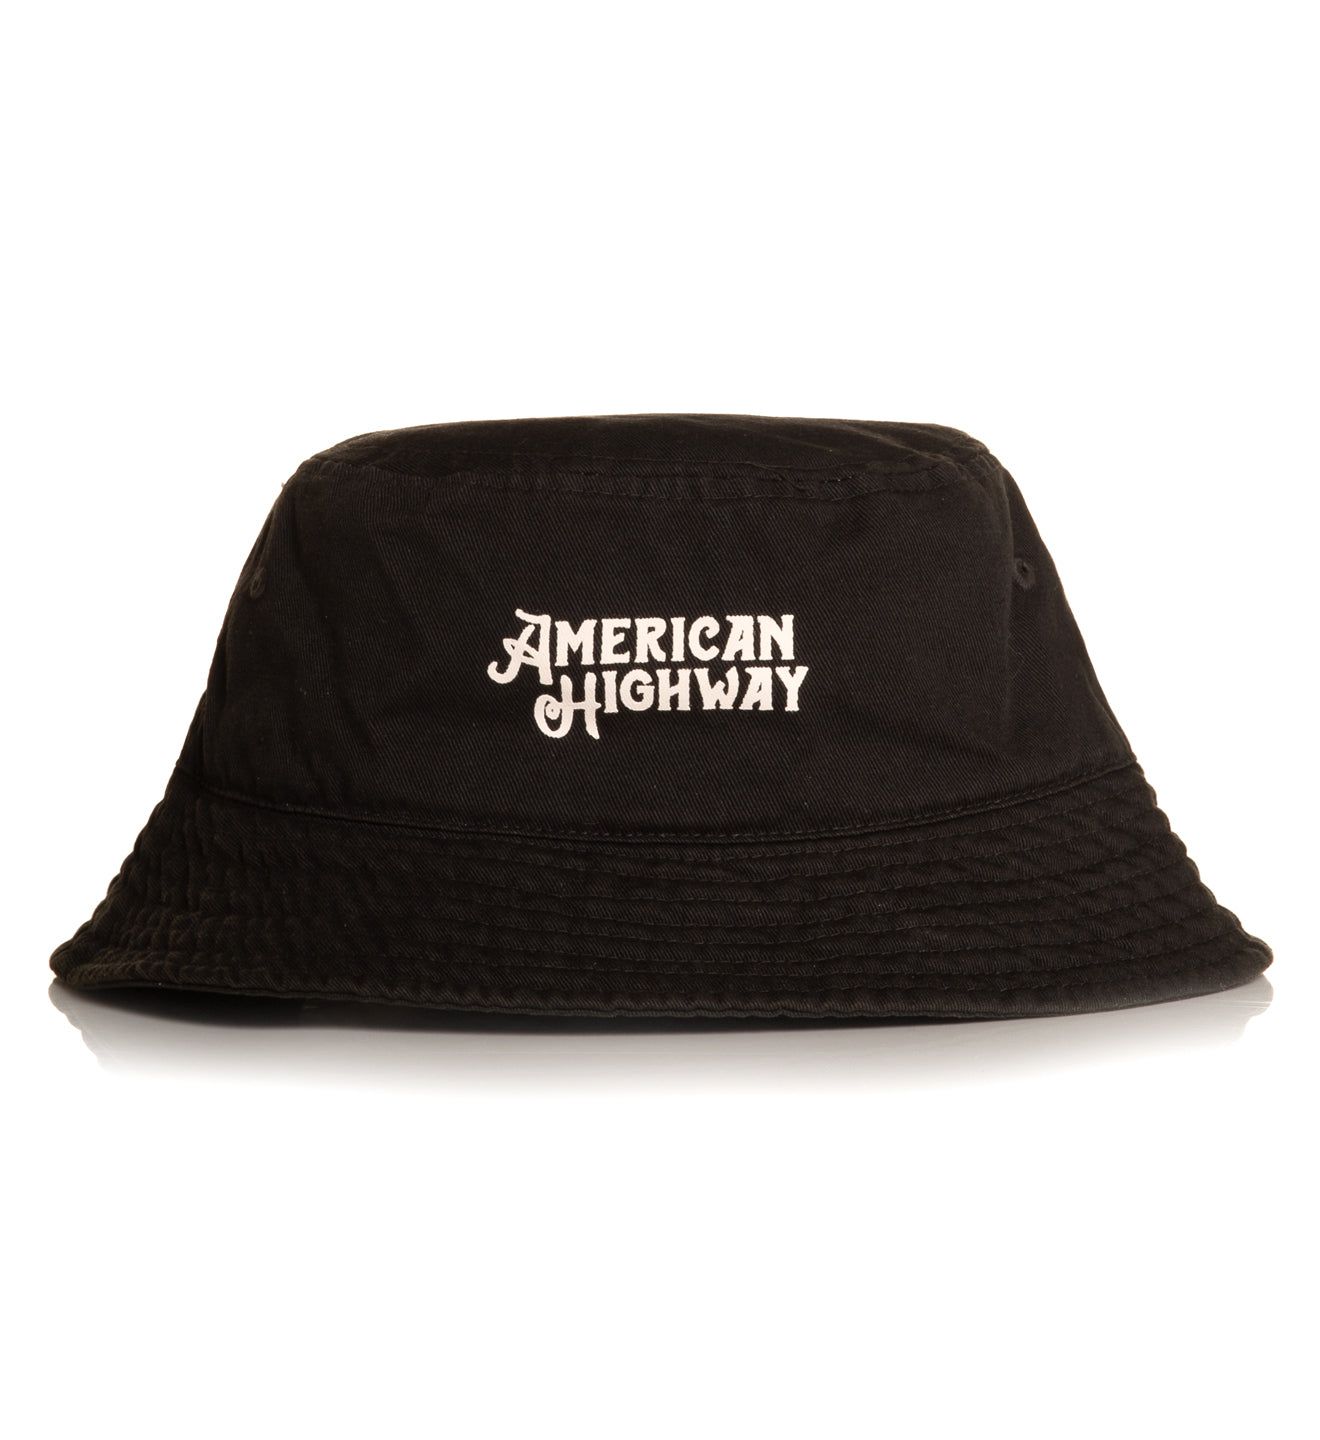 Highway Bucket Hat - American Highway